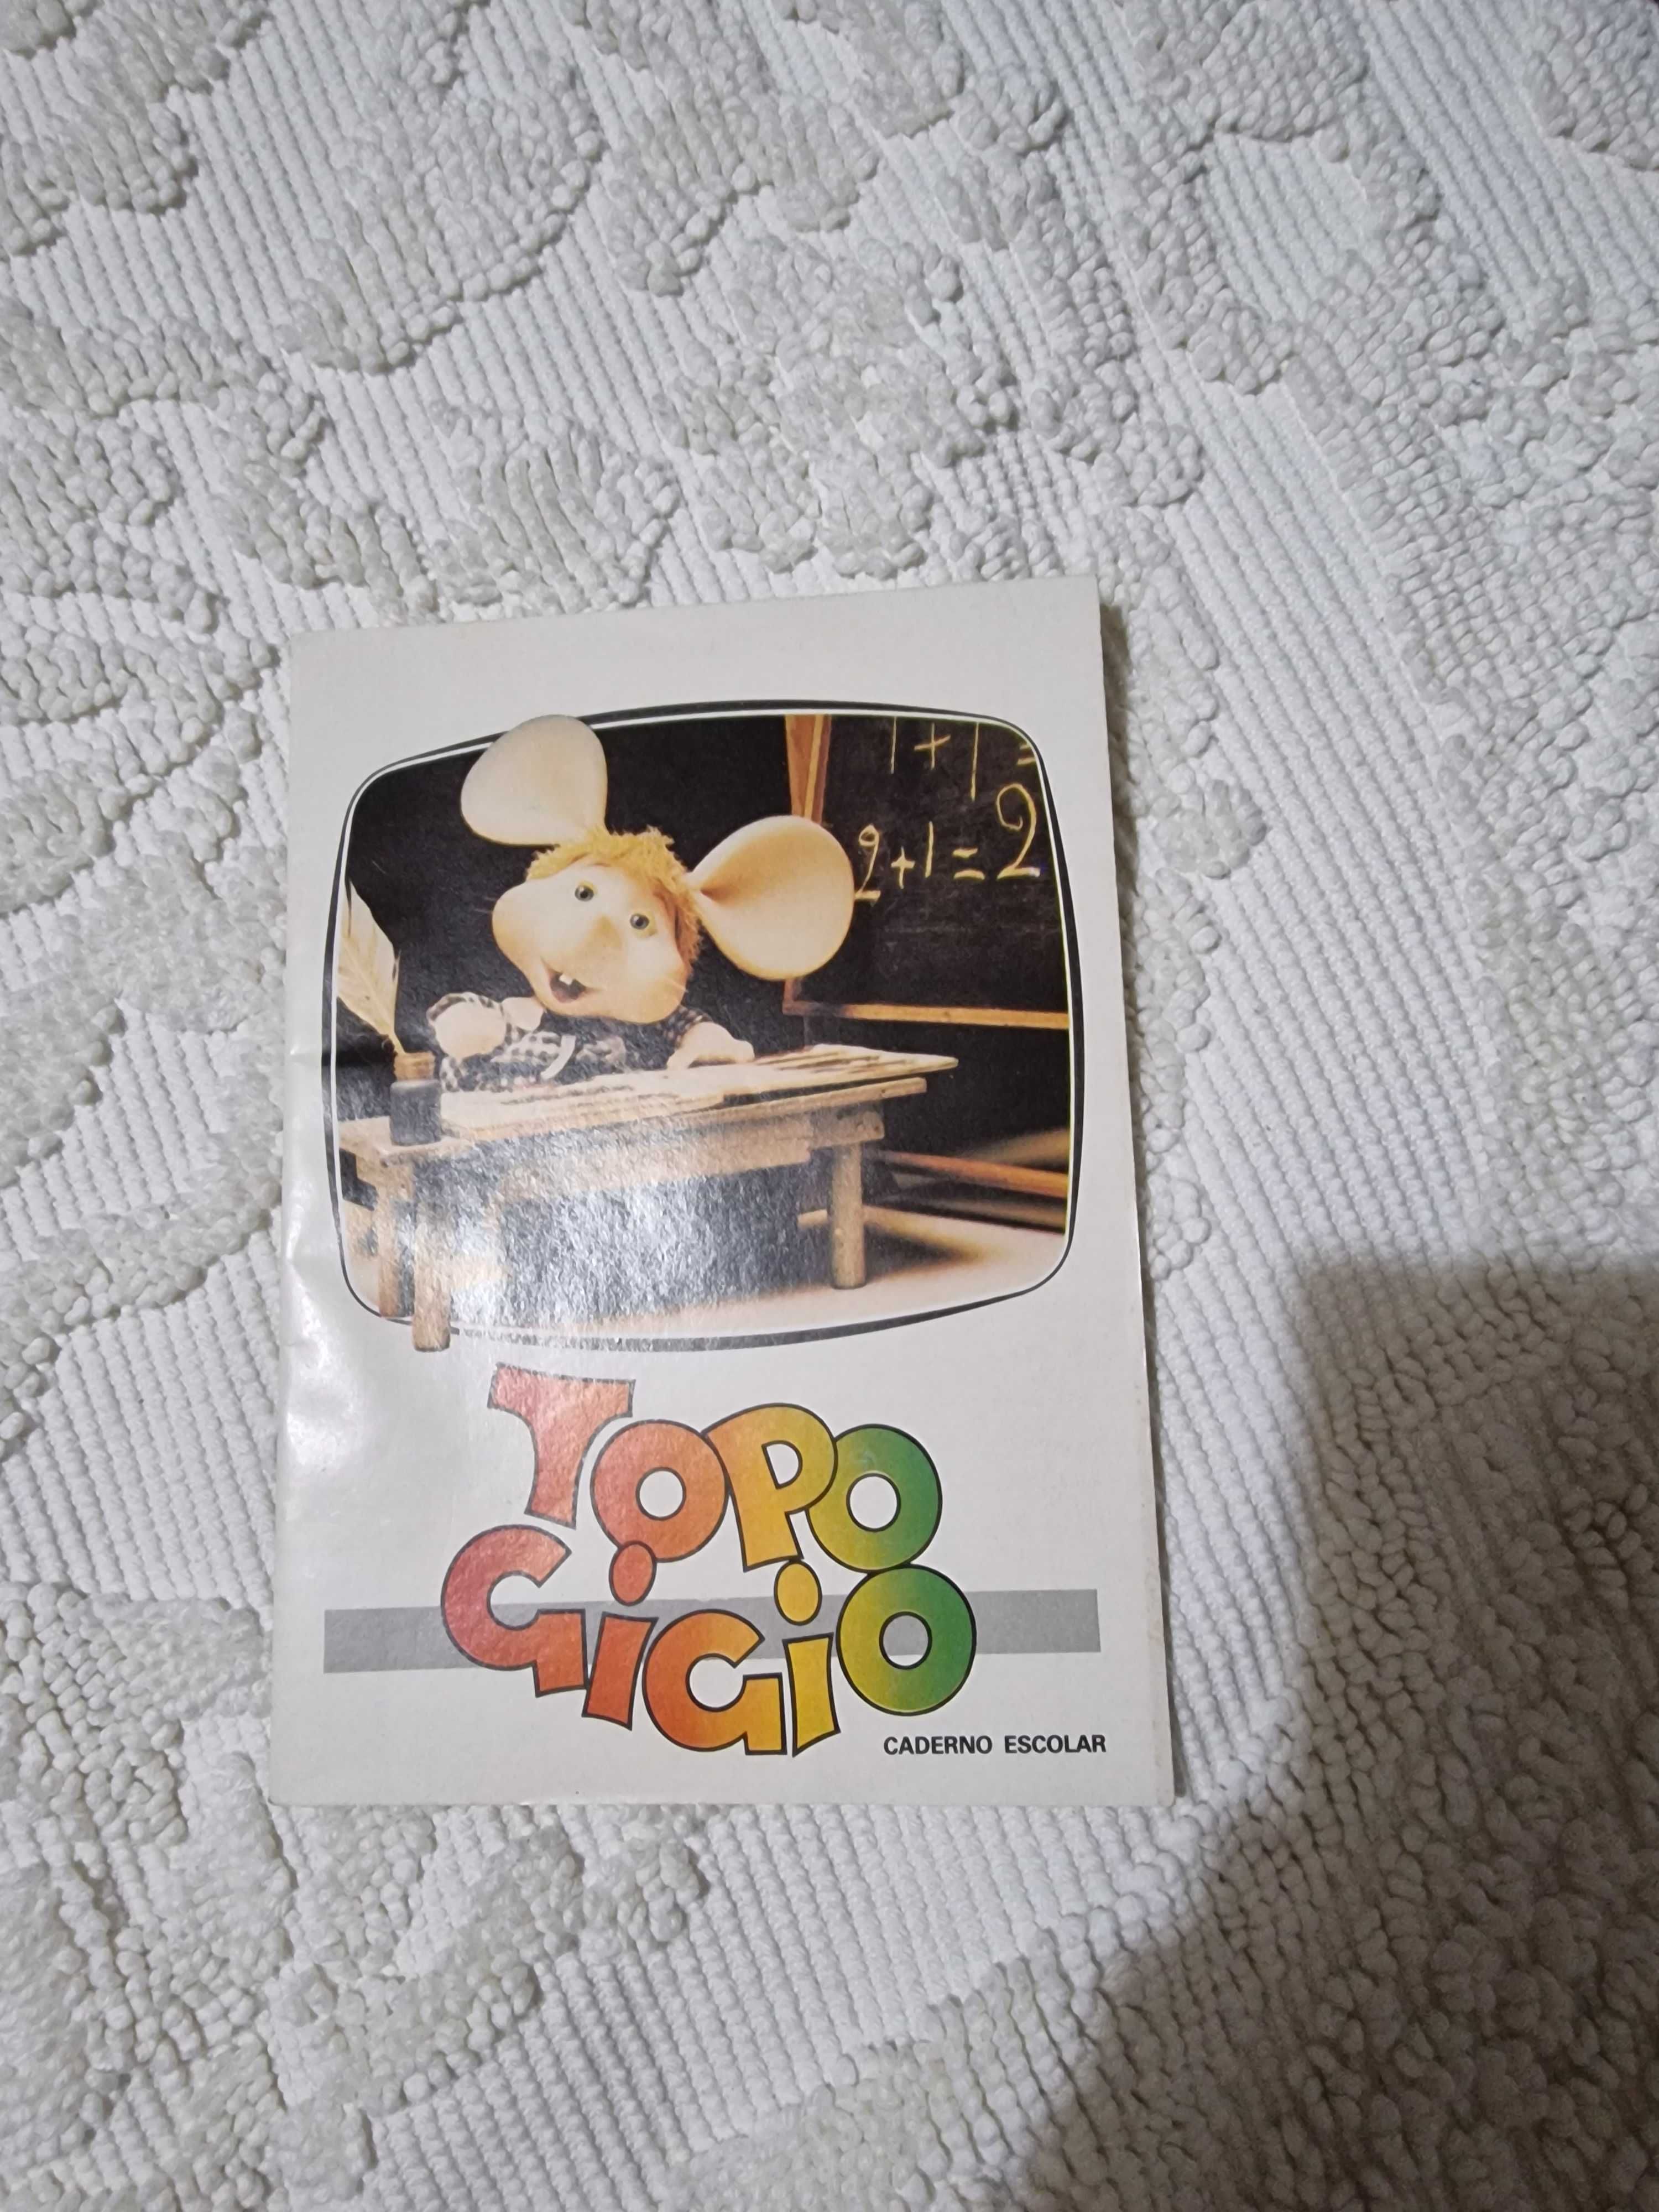 Cadernos escolares vintage Ambar Topo Gigio